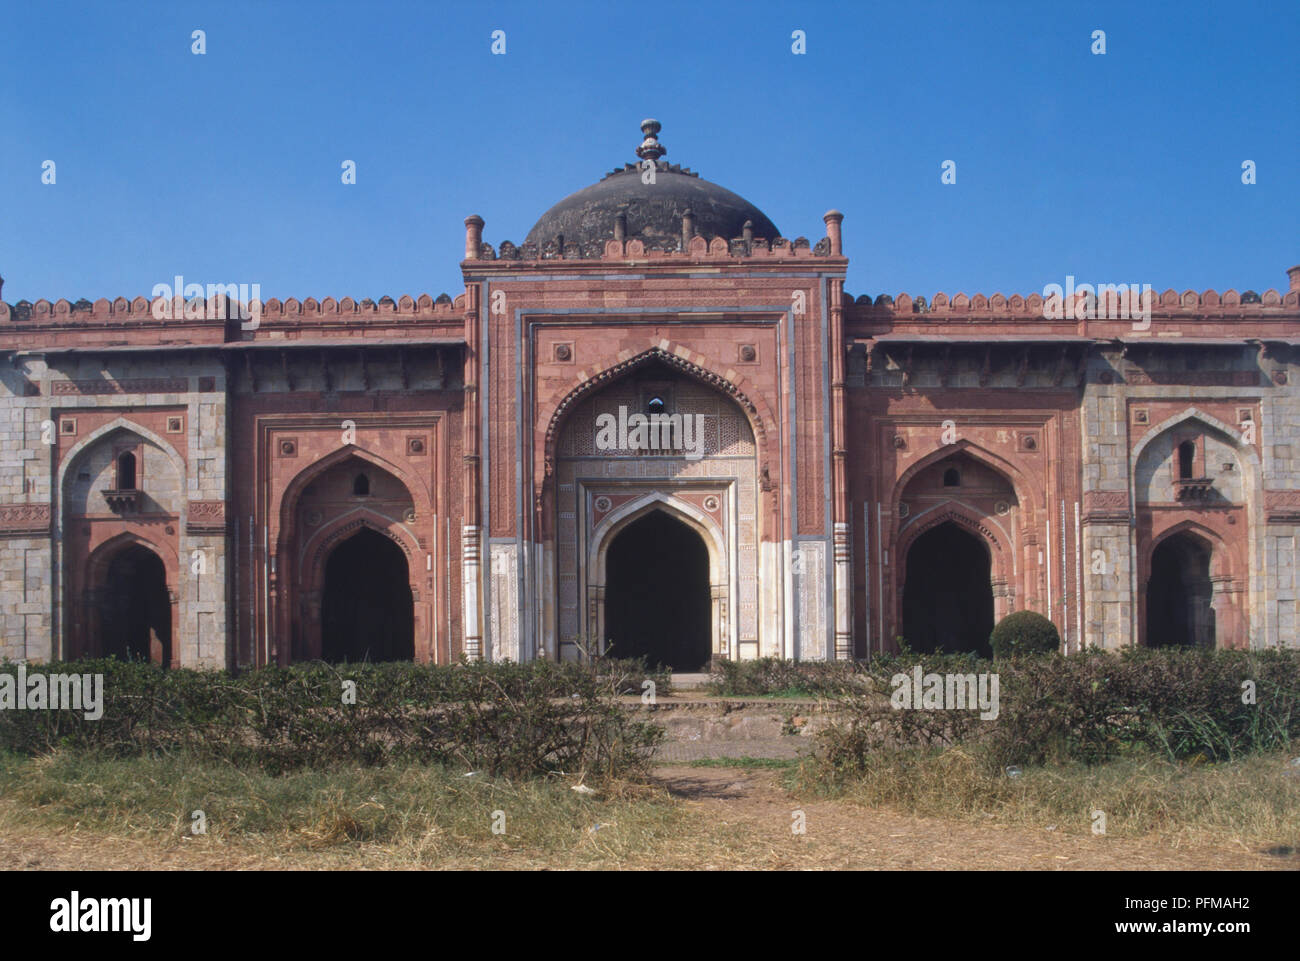 Indien, Delhi, Purana Qila, Außen von Sher Shah's Moschee, roter Sandstein mit dekorativen Kacheln und verzierten Torbögen, Fassade. Stockfoto